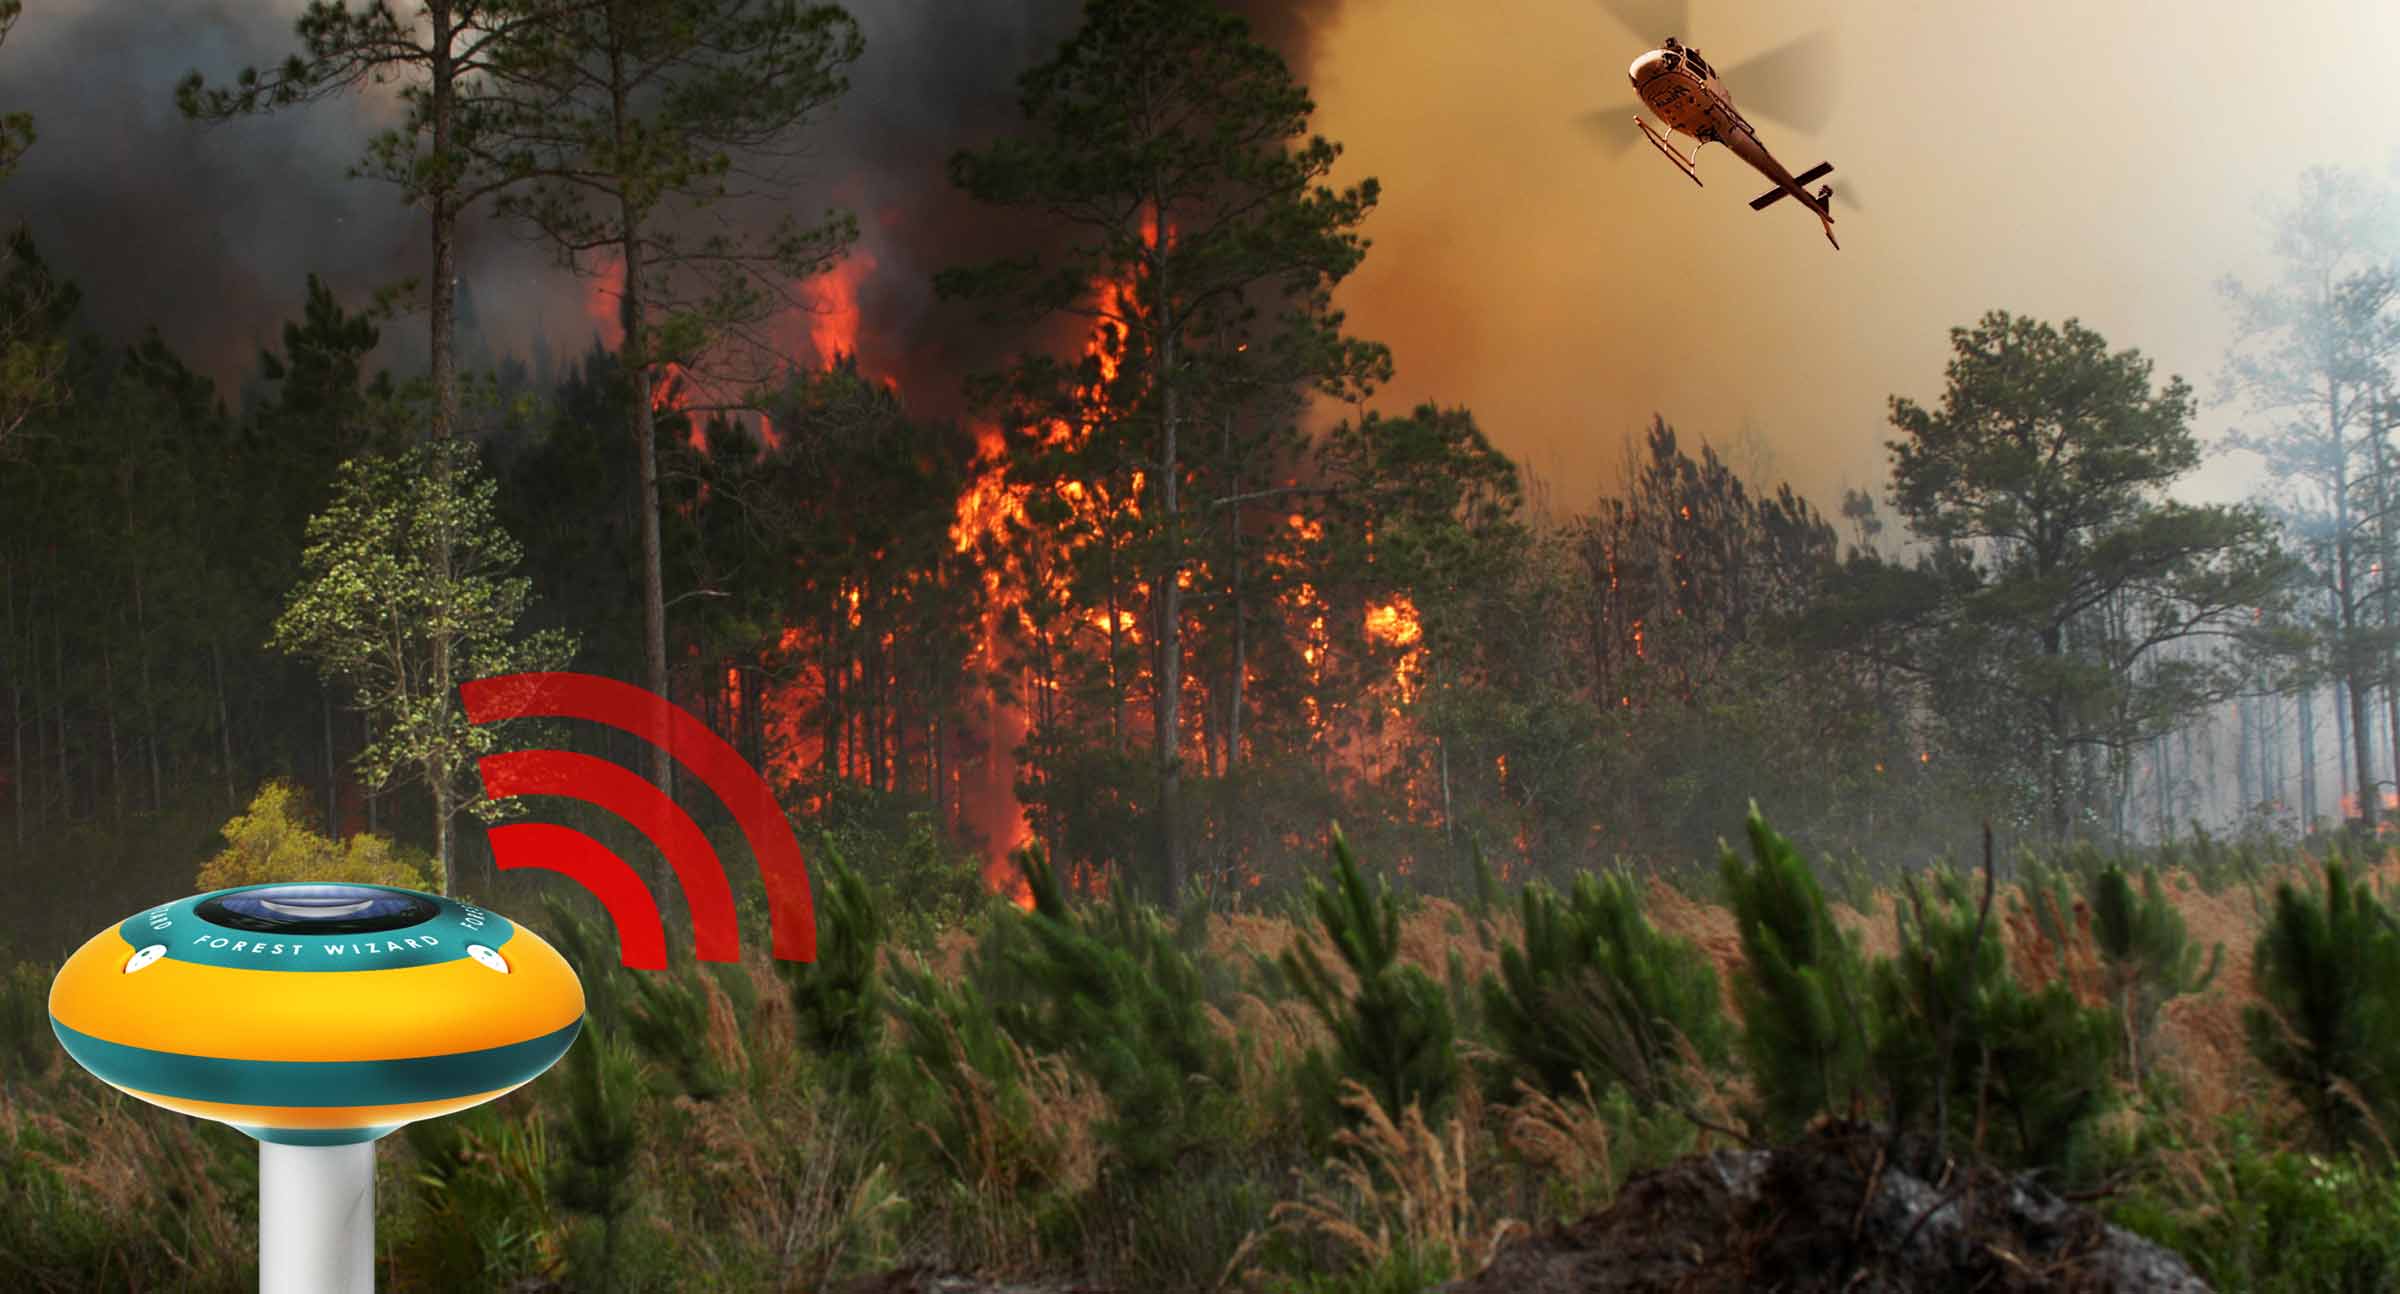 Лесохранитель система дистанционного мониторинга лесных пожаров. Система раннего обнаружения лесных пожаров. Система раннего обнаружения лесных пожаров «Лесной дозор». Forest Fire Detection система. Система видеомониторинга лесных пожаров.